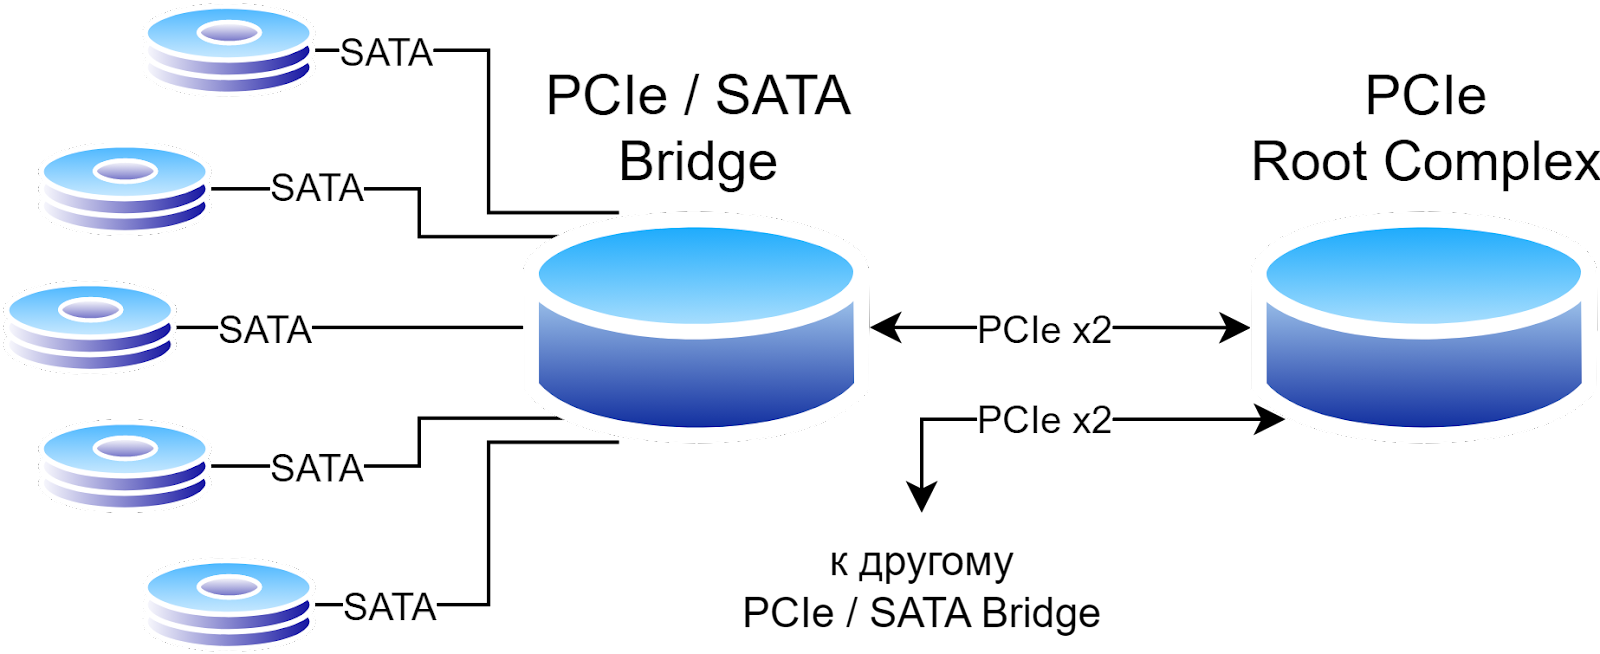 Подключение нескольких PCIe / SATA Bridge контроллеров